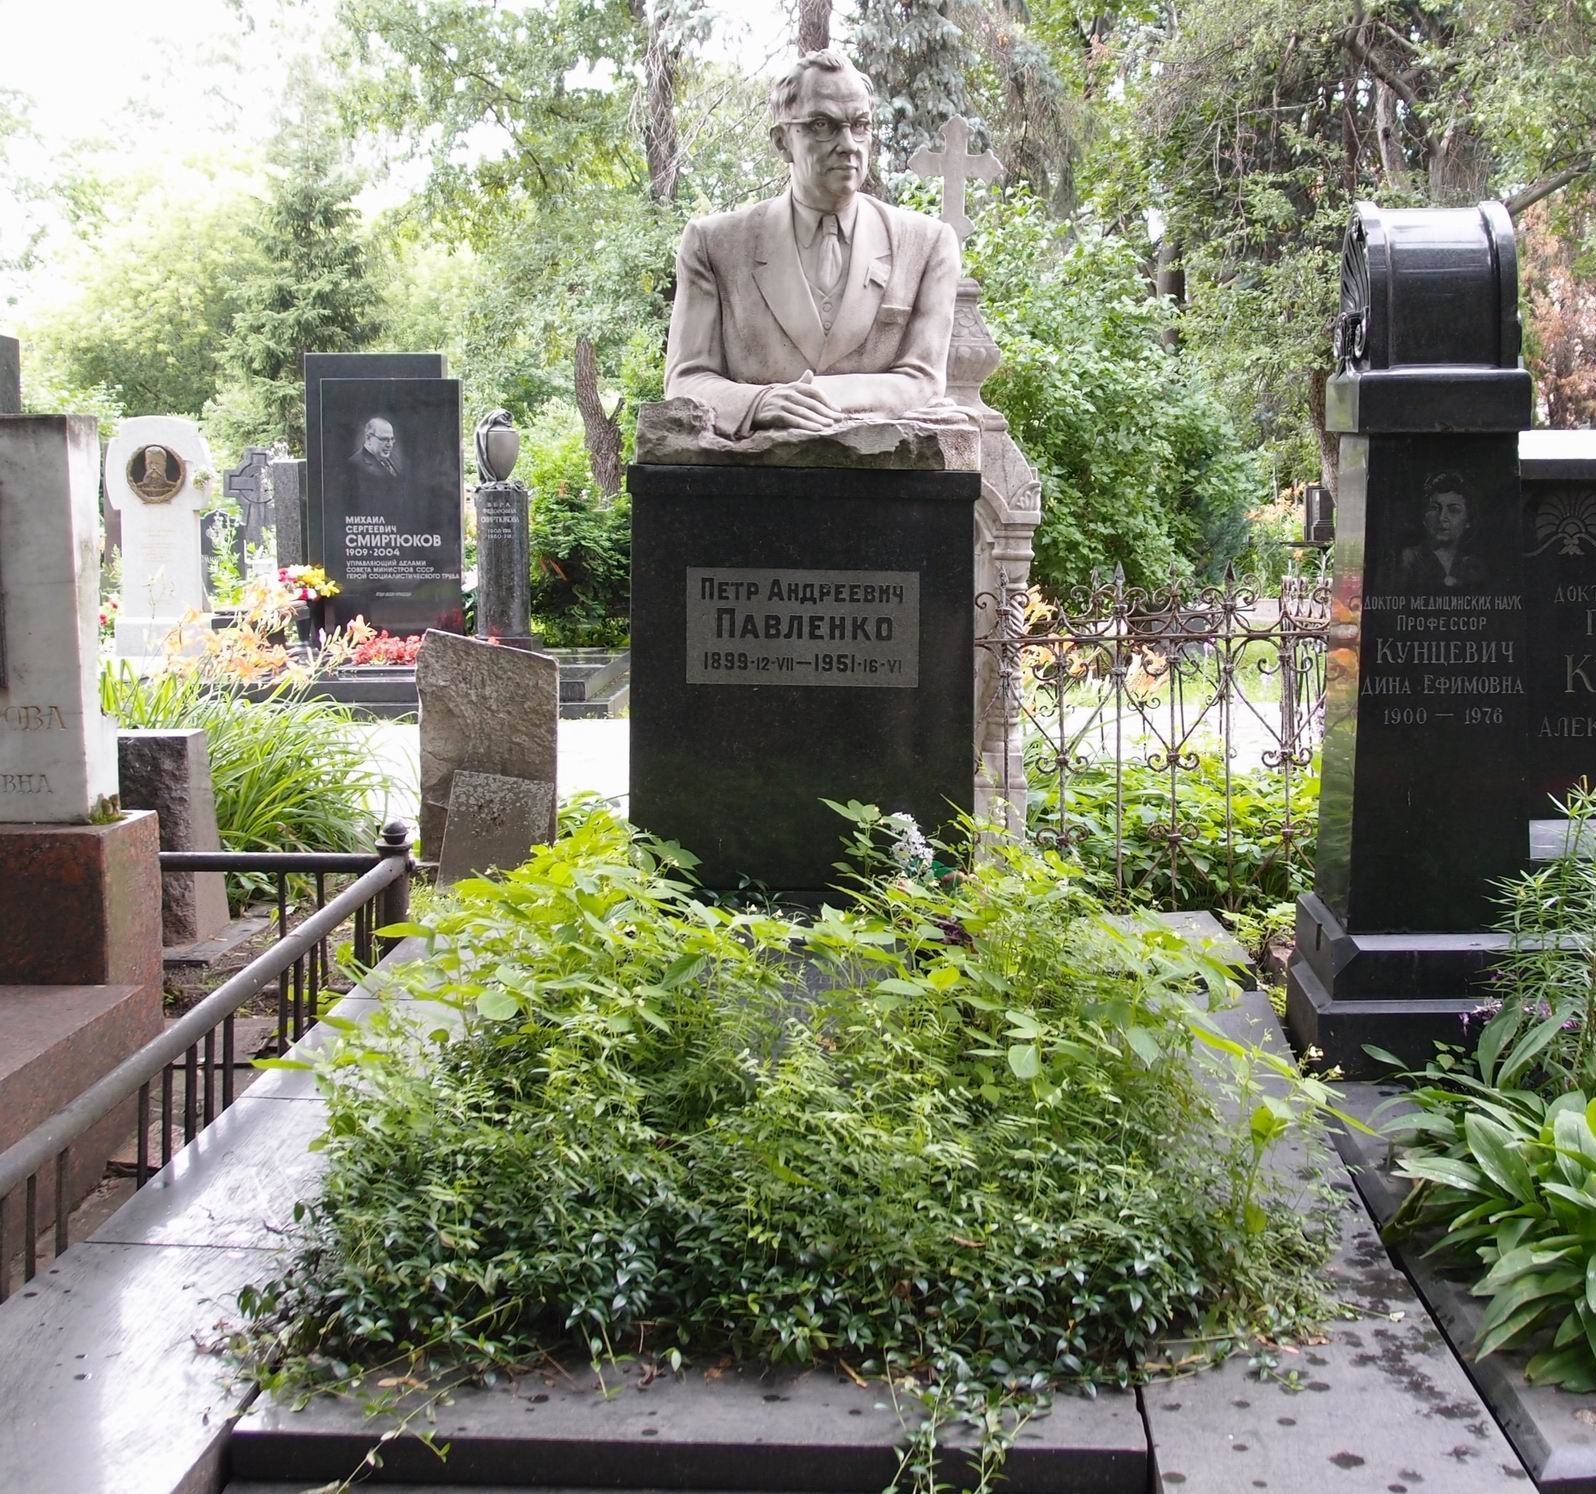 Памятник на могиле Павленко П.А. (1899–1951), ск. С.Конёнков, арх. А.Заварзин, на Новодевичьем кладбище (1–2–17). Нажмите левую кнопку мыши, чтобы увидеть фрагмент памятника крупно.